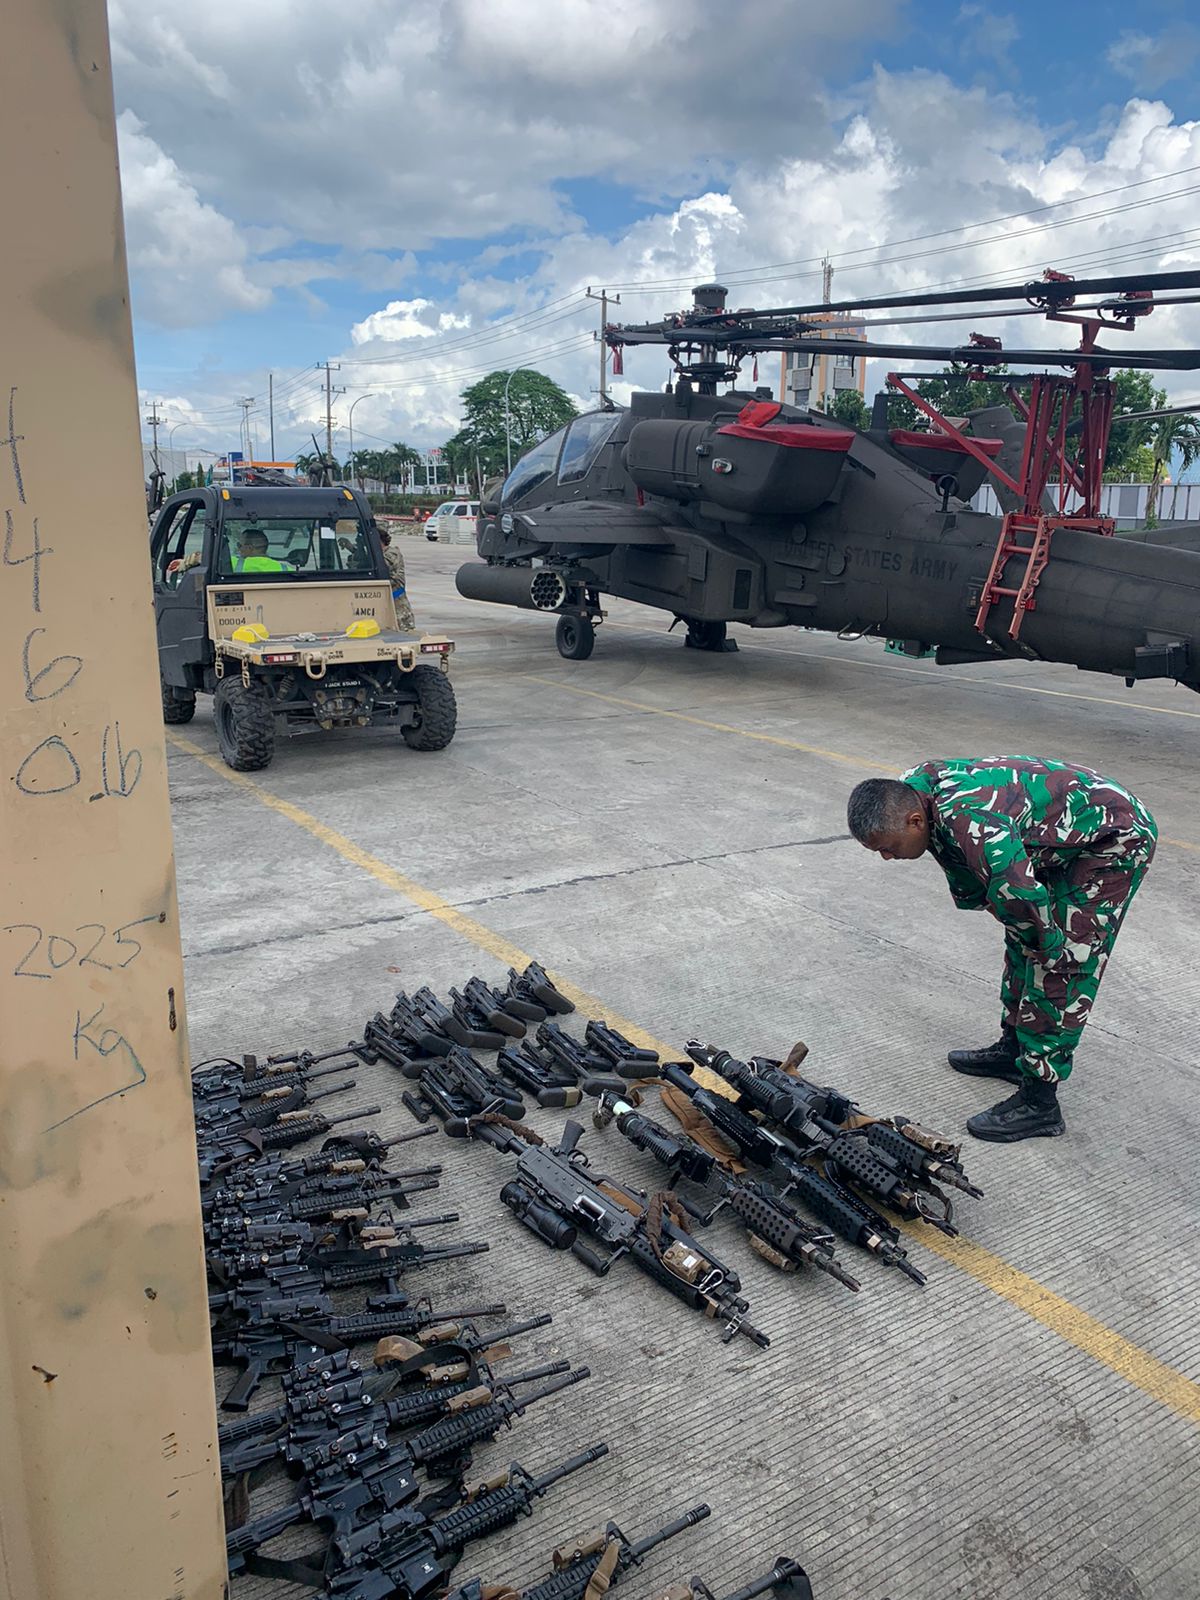 Penyegelan Senjata di Pelabuhan Panjang, Bea Cukai dan Pelindo Kompak Irit Bicara